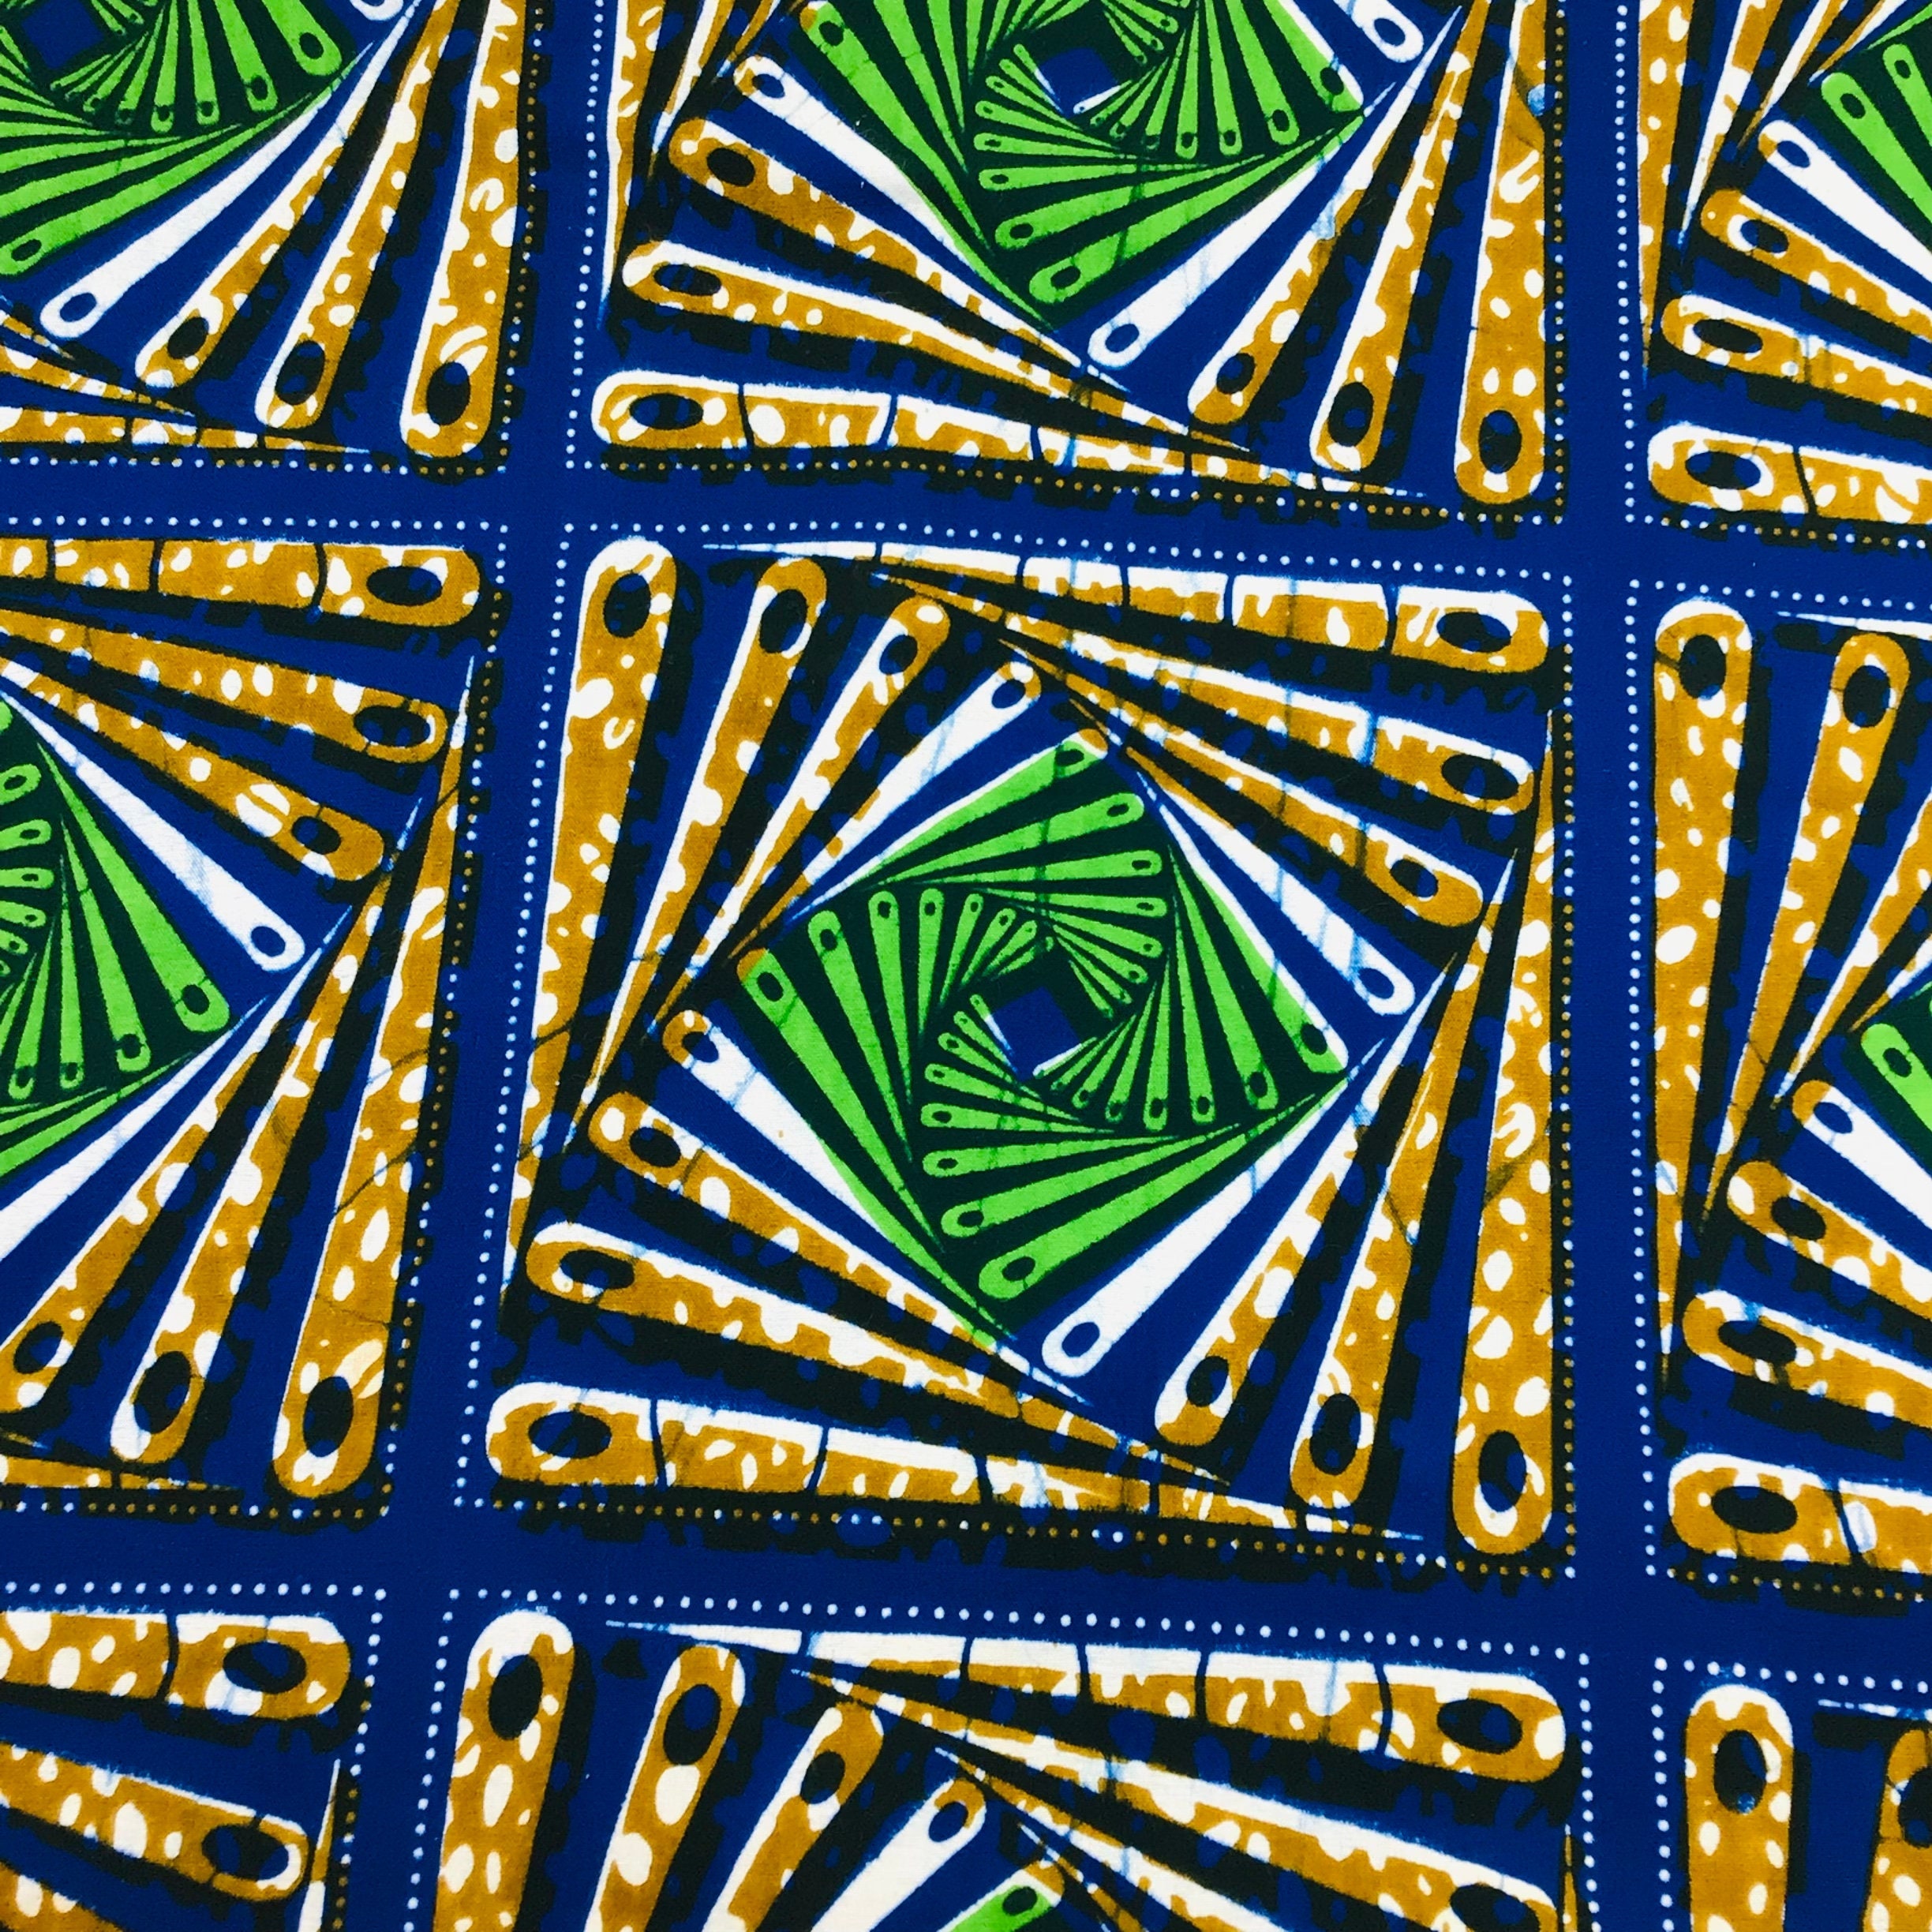  900g Veritable African Wax Prints Fabric Wax 100